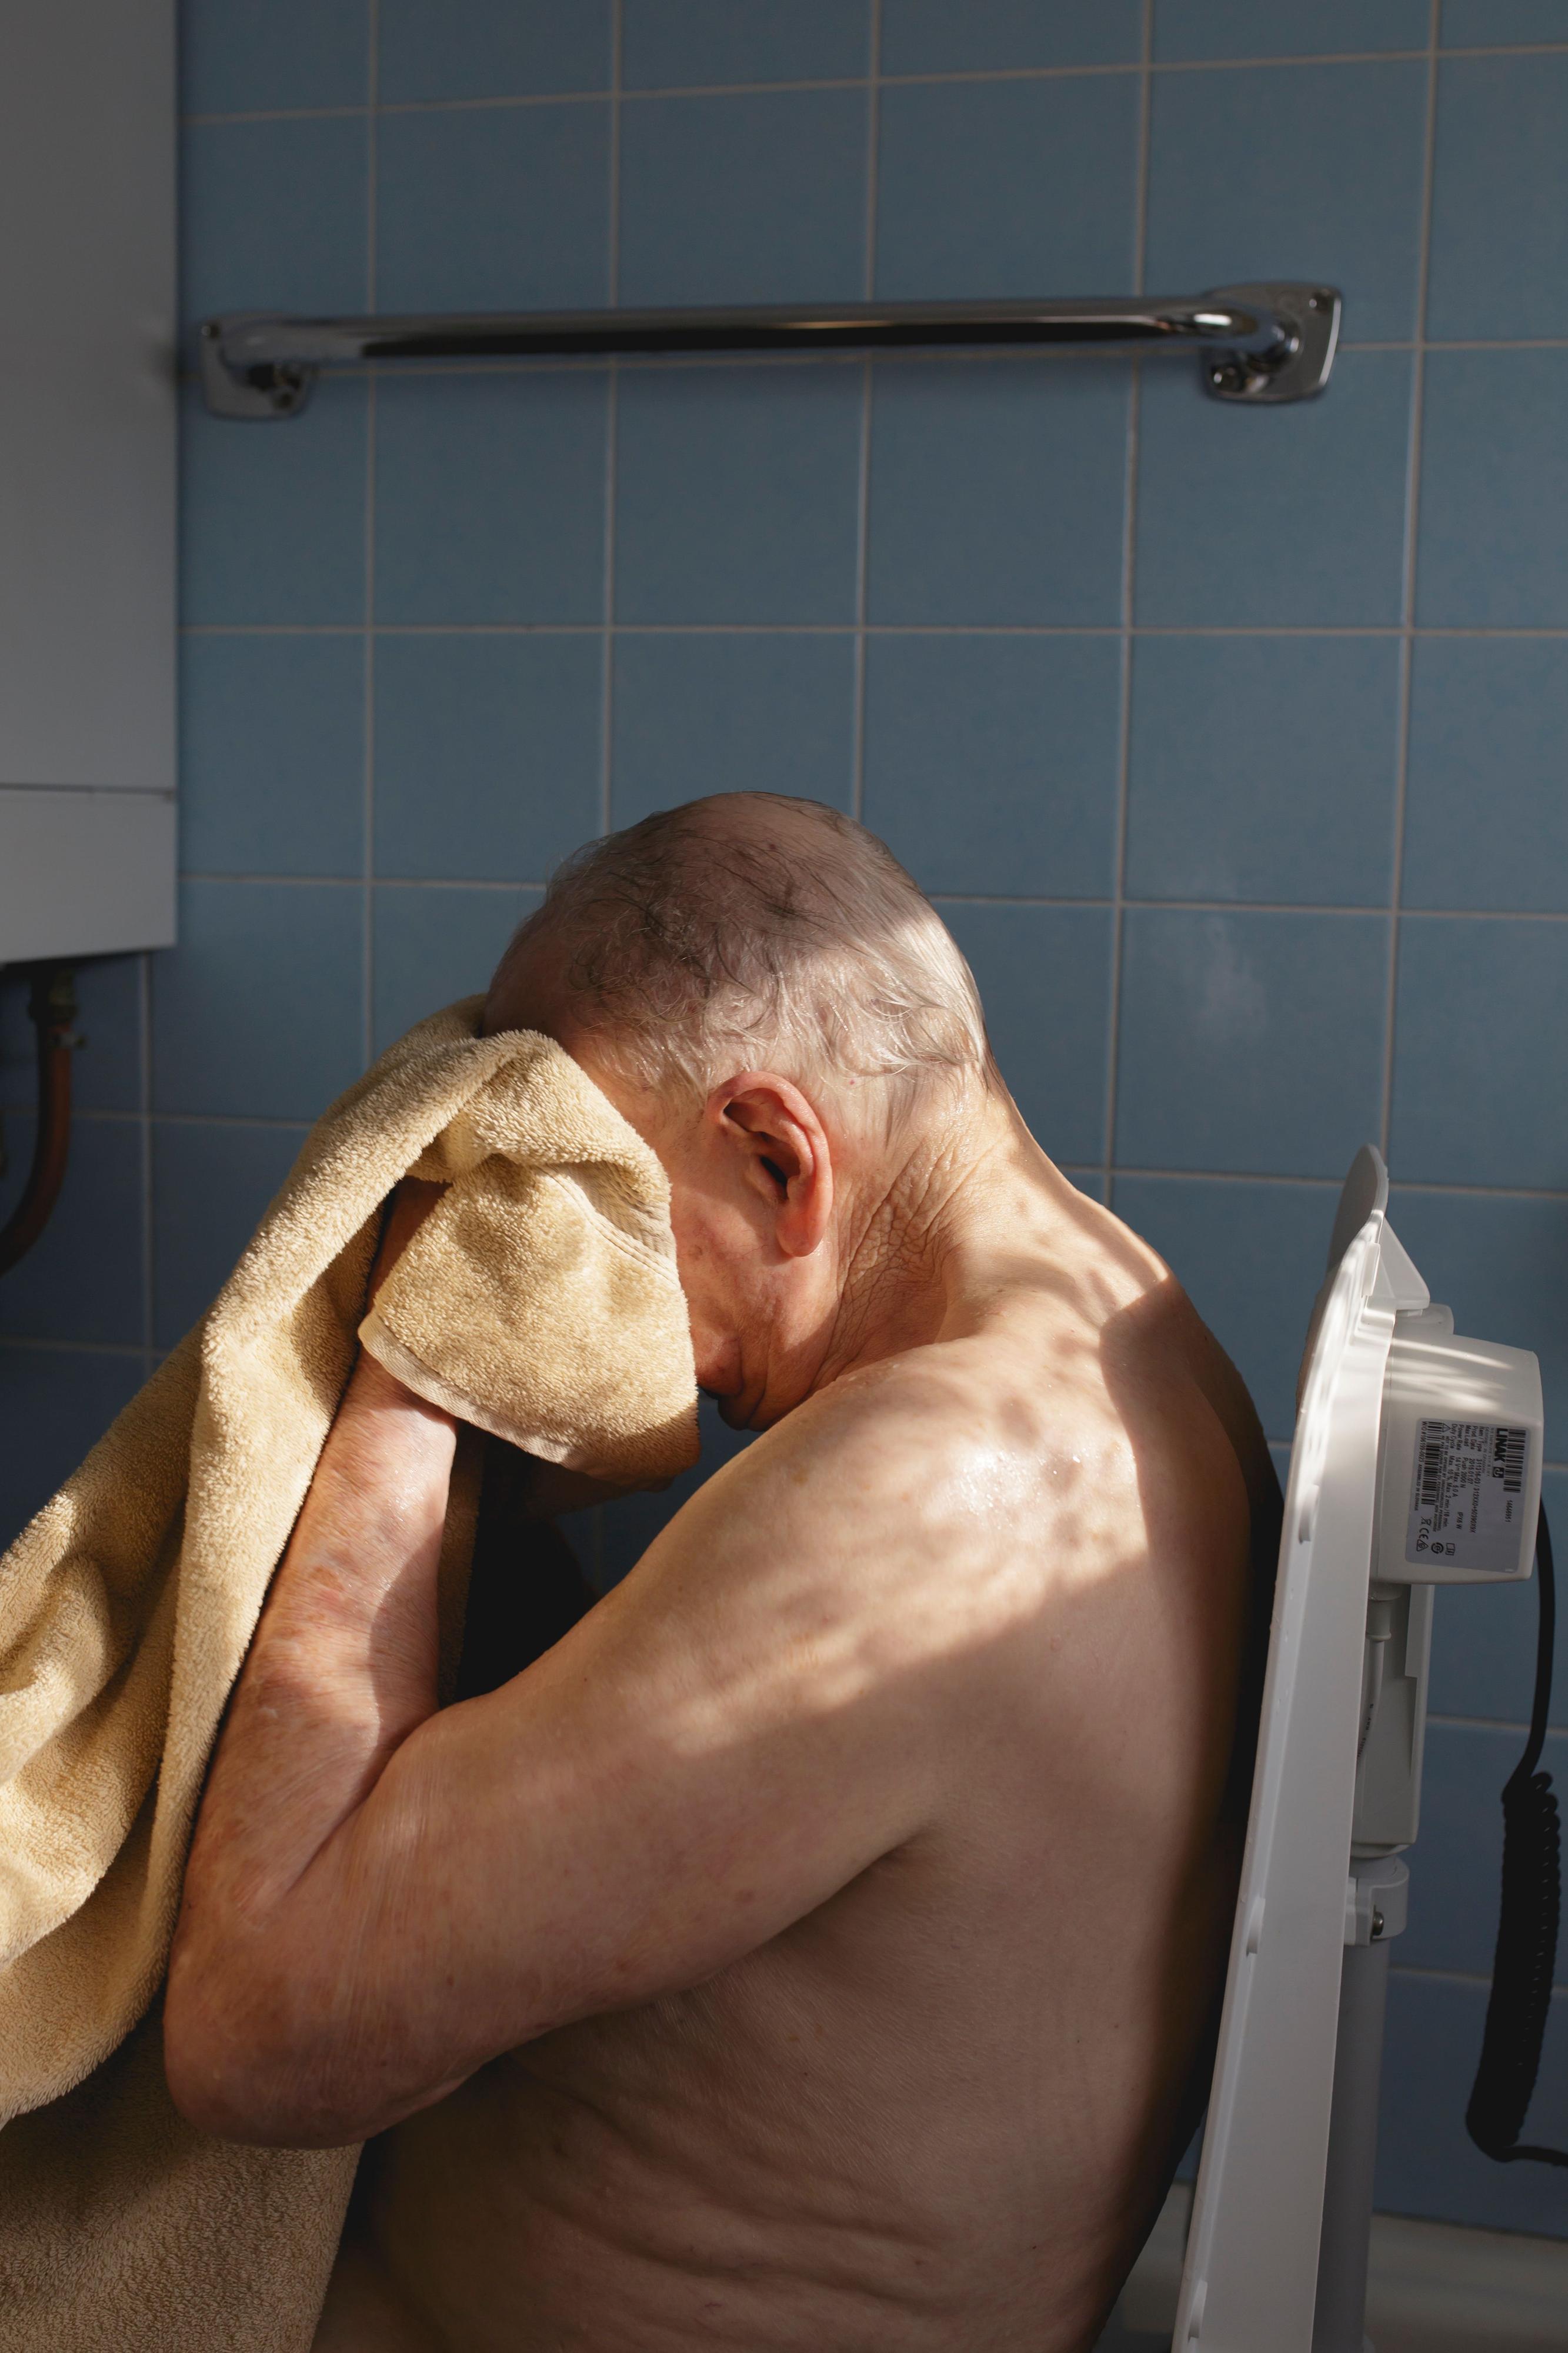 Ein älterer Mann sitzt mit nacktem Oberkörper in einem gekachelten Raum. Er trocknet sich mit einem Handtuch das Gesicht.